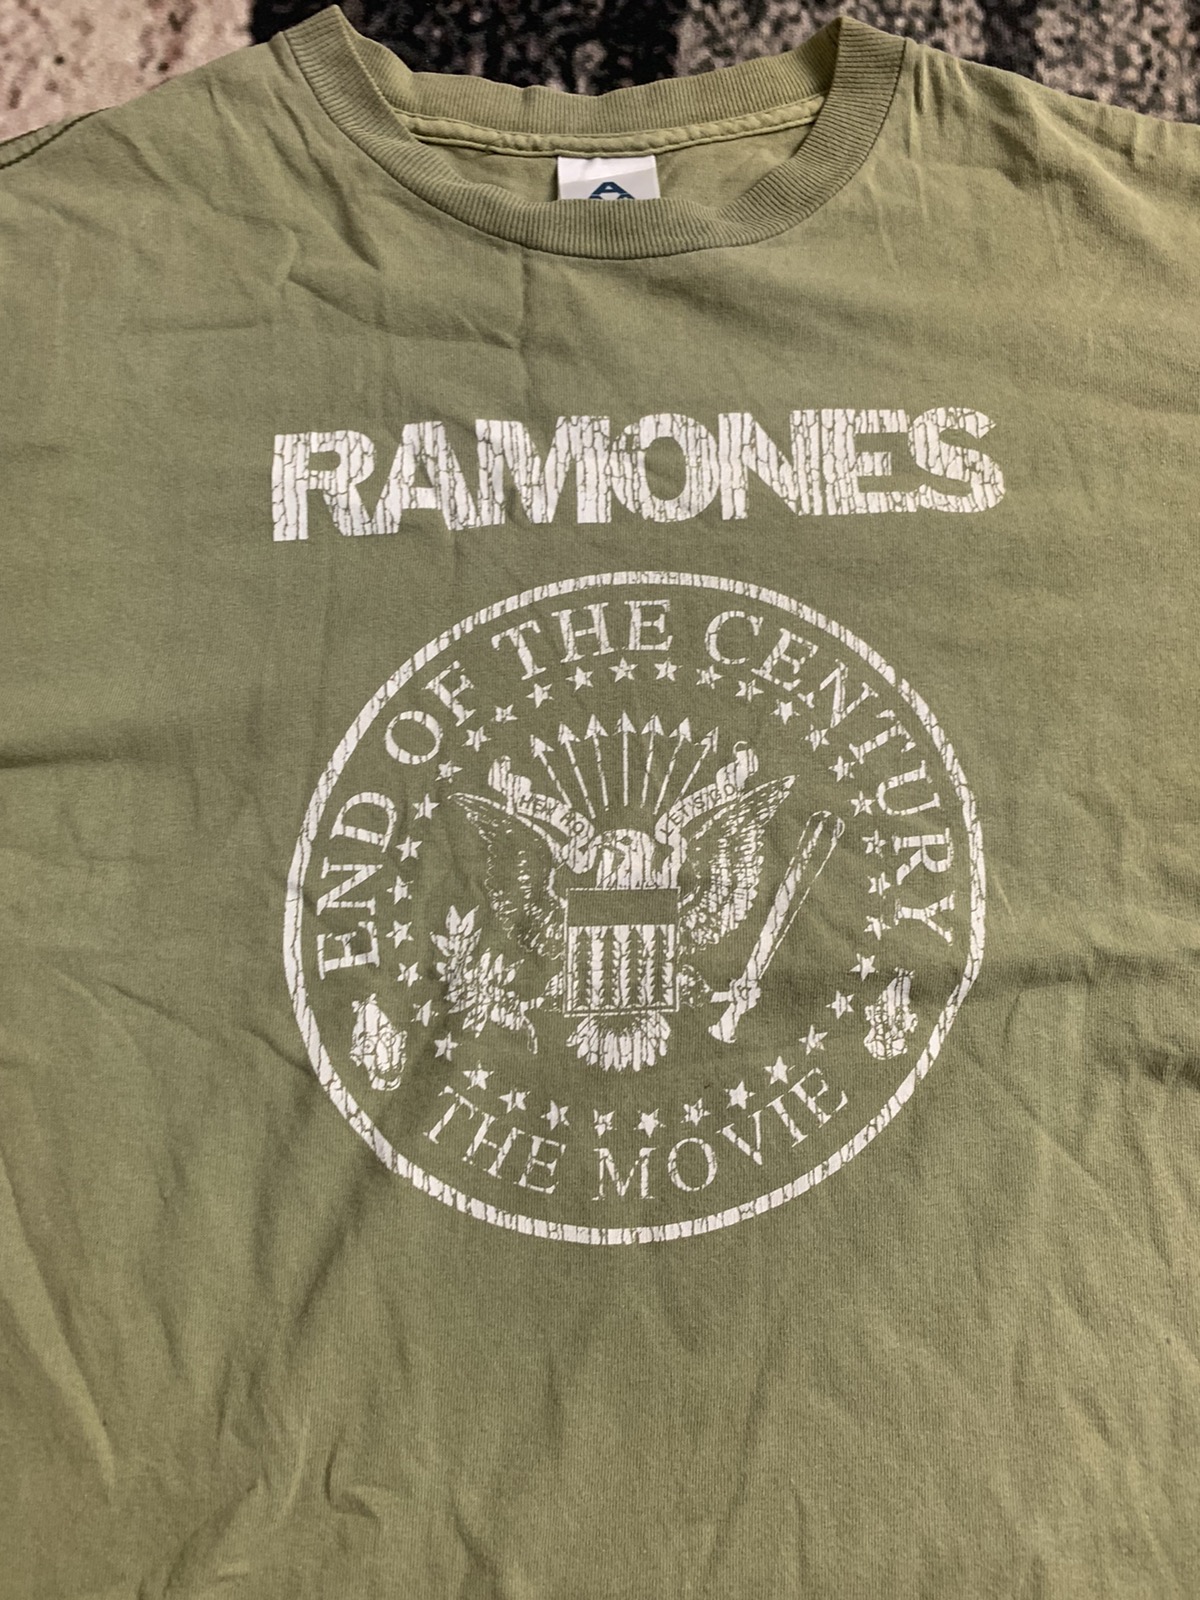 Band Tees - Ramones band tees shirt - 4